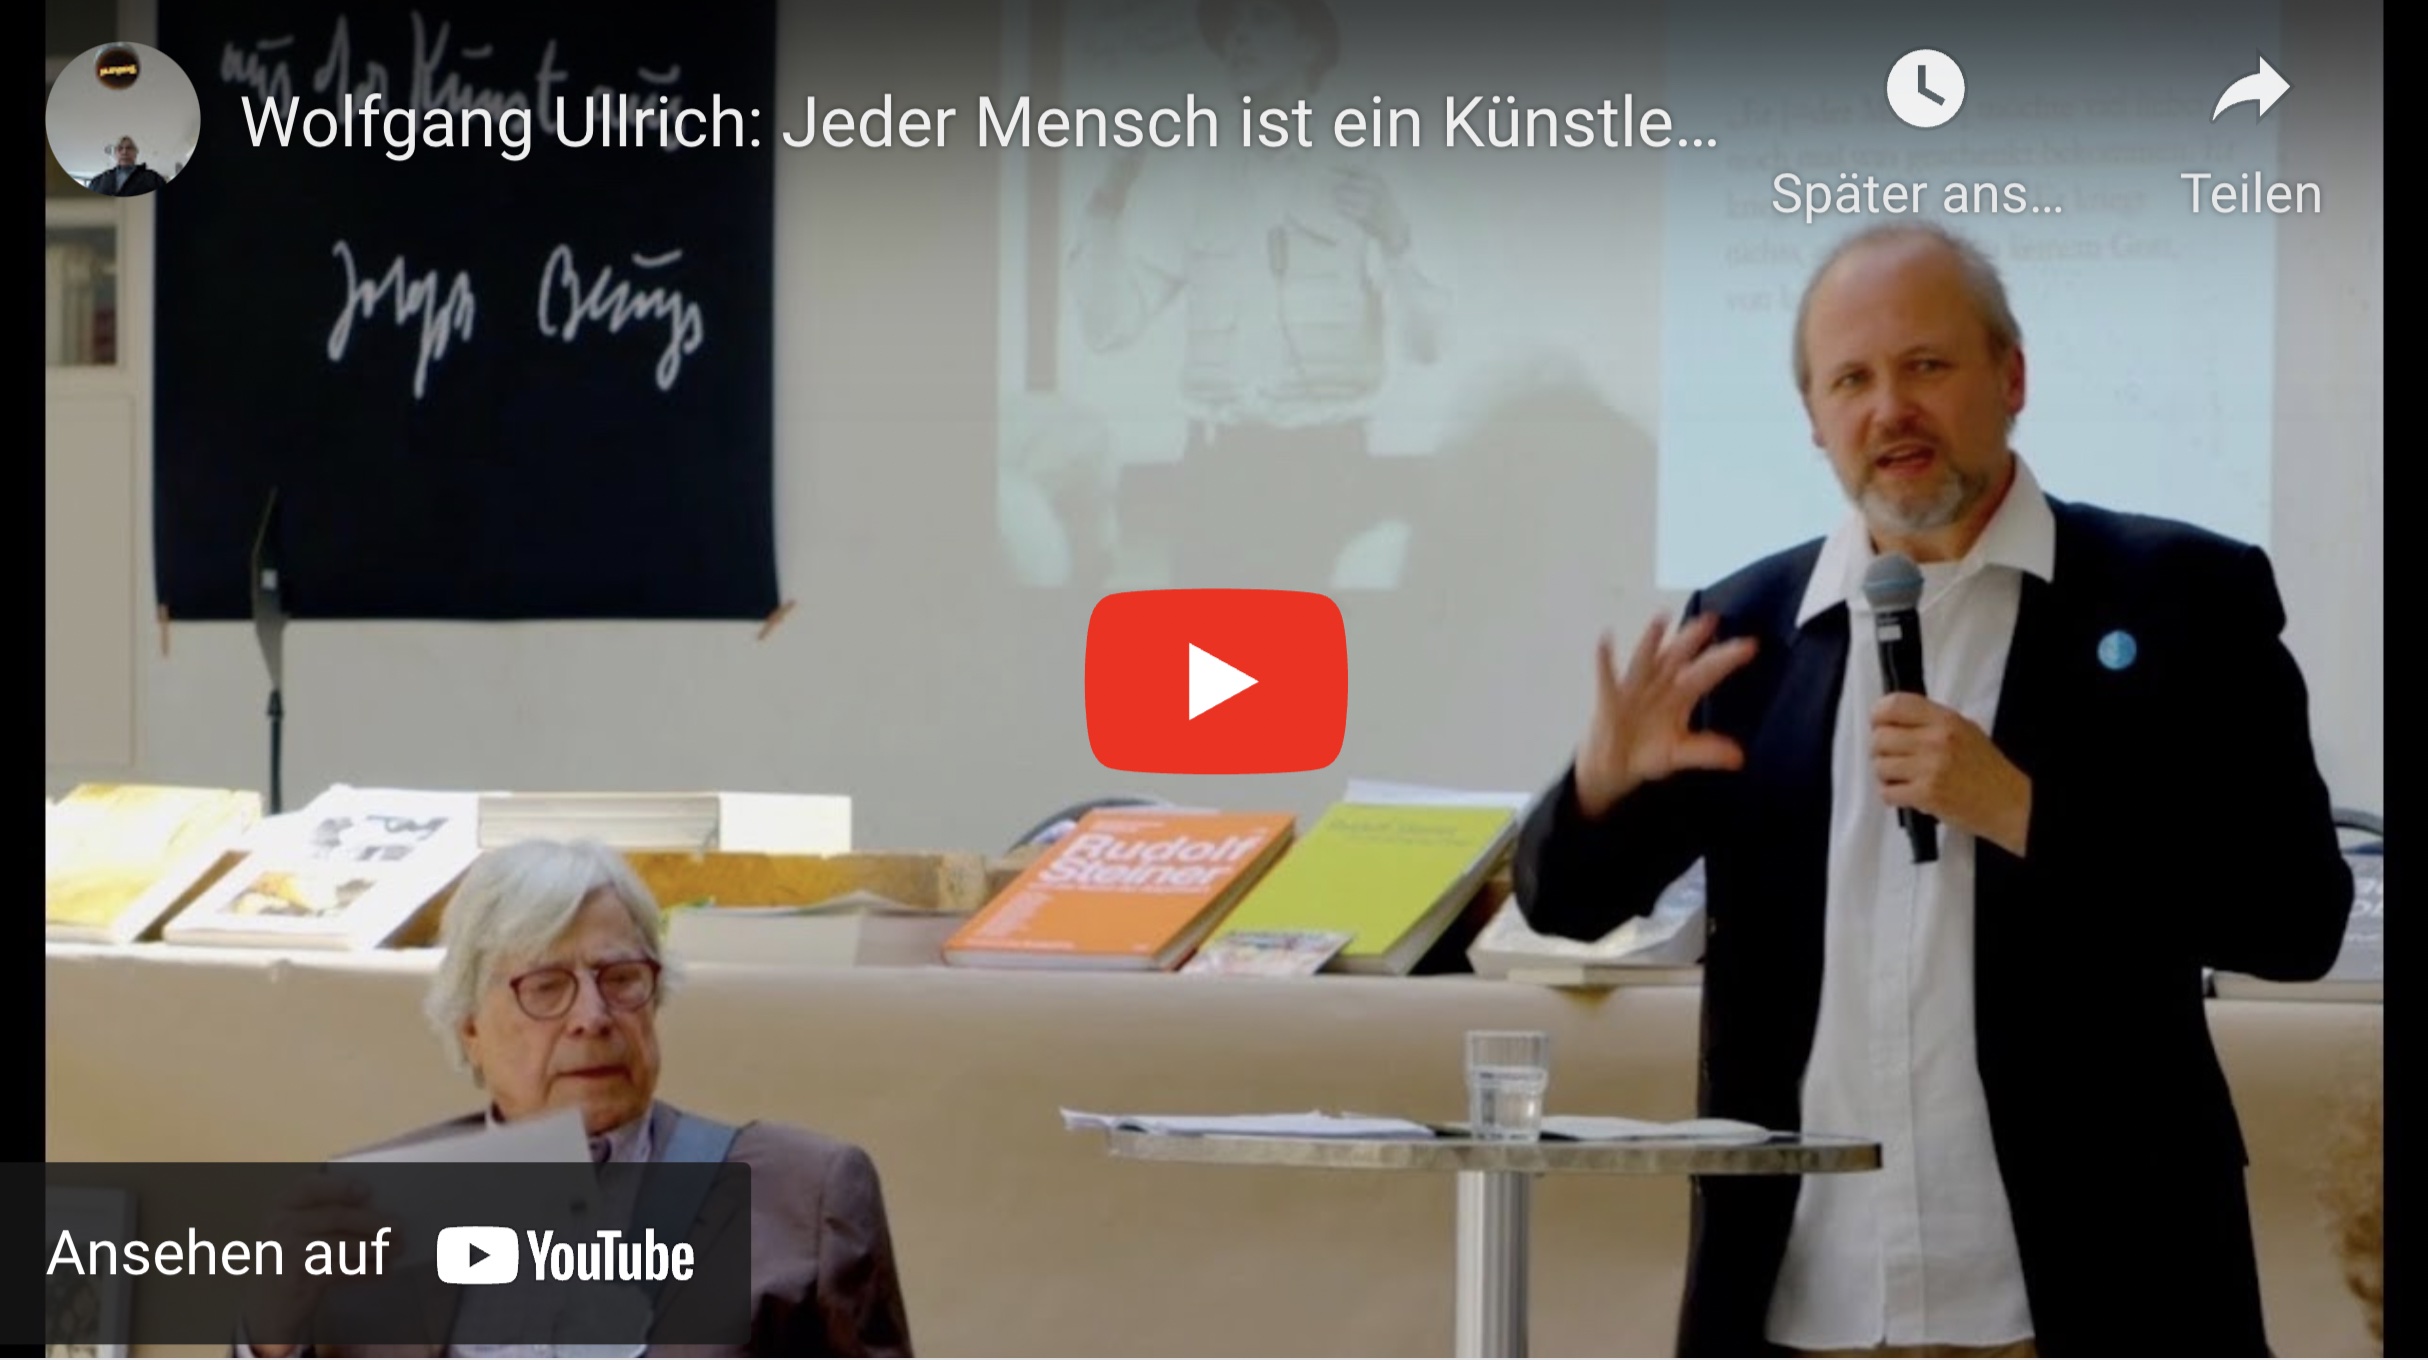 Wolfgang Ullrich: 'Jeder Mensch ist ein Künstler' - Joseph Beuys als Theologe